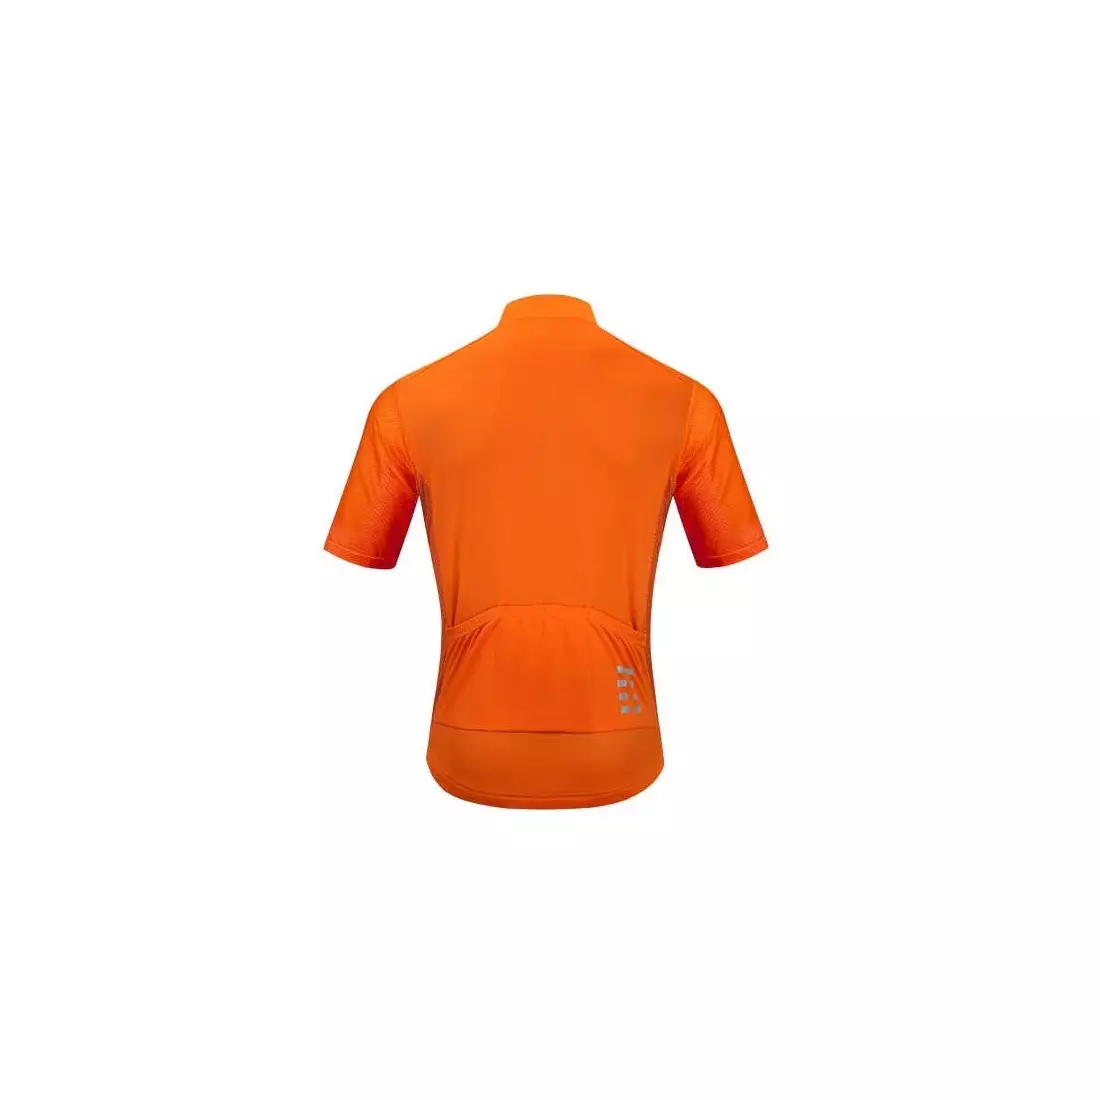 WOSAWE BL247-O pánský cyklistický dres s krátkým rukávem, oranžový